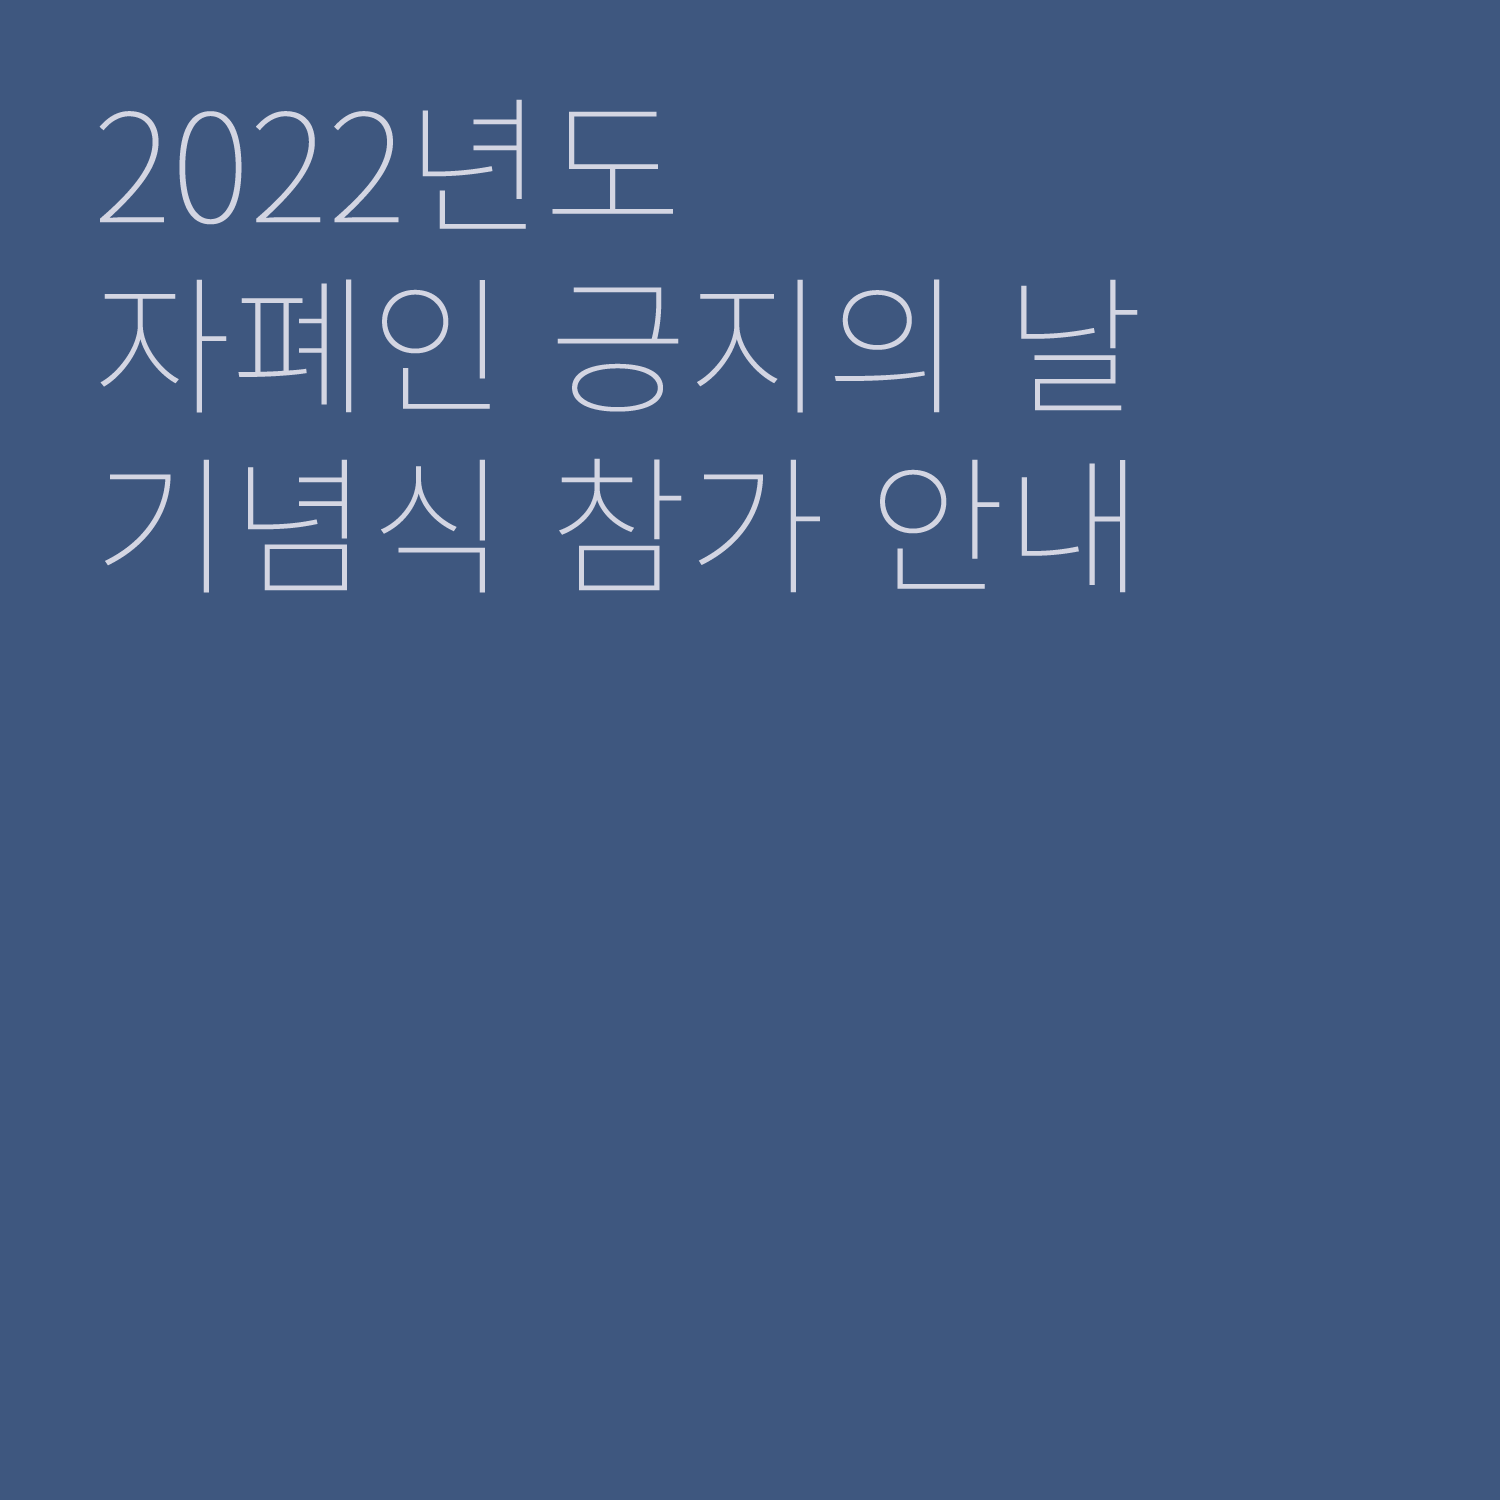 [표지]
2022년도
자폐인 긍지의 날
기념식 참가 안내